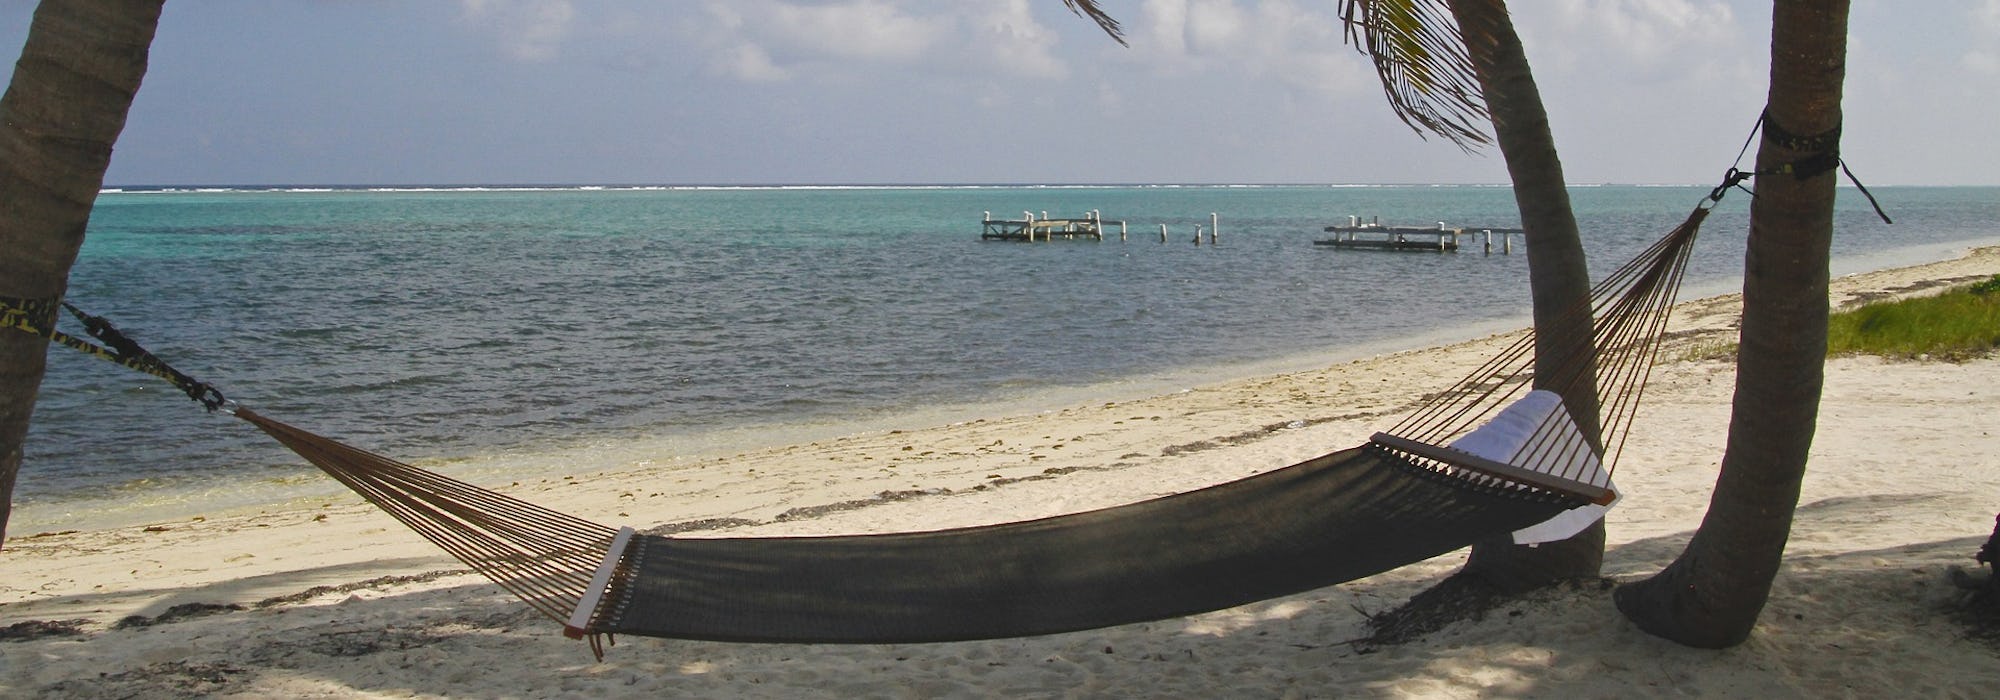 En hängmattan mellan två palmer på stranden med havet som sköljer in.